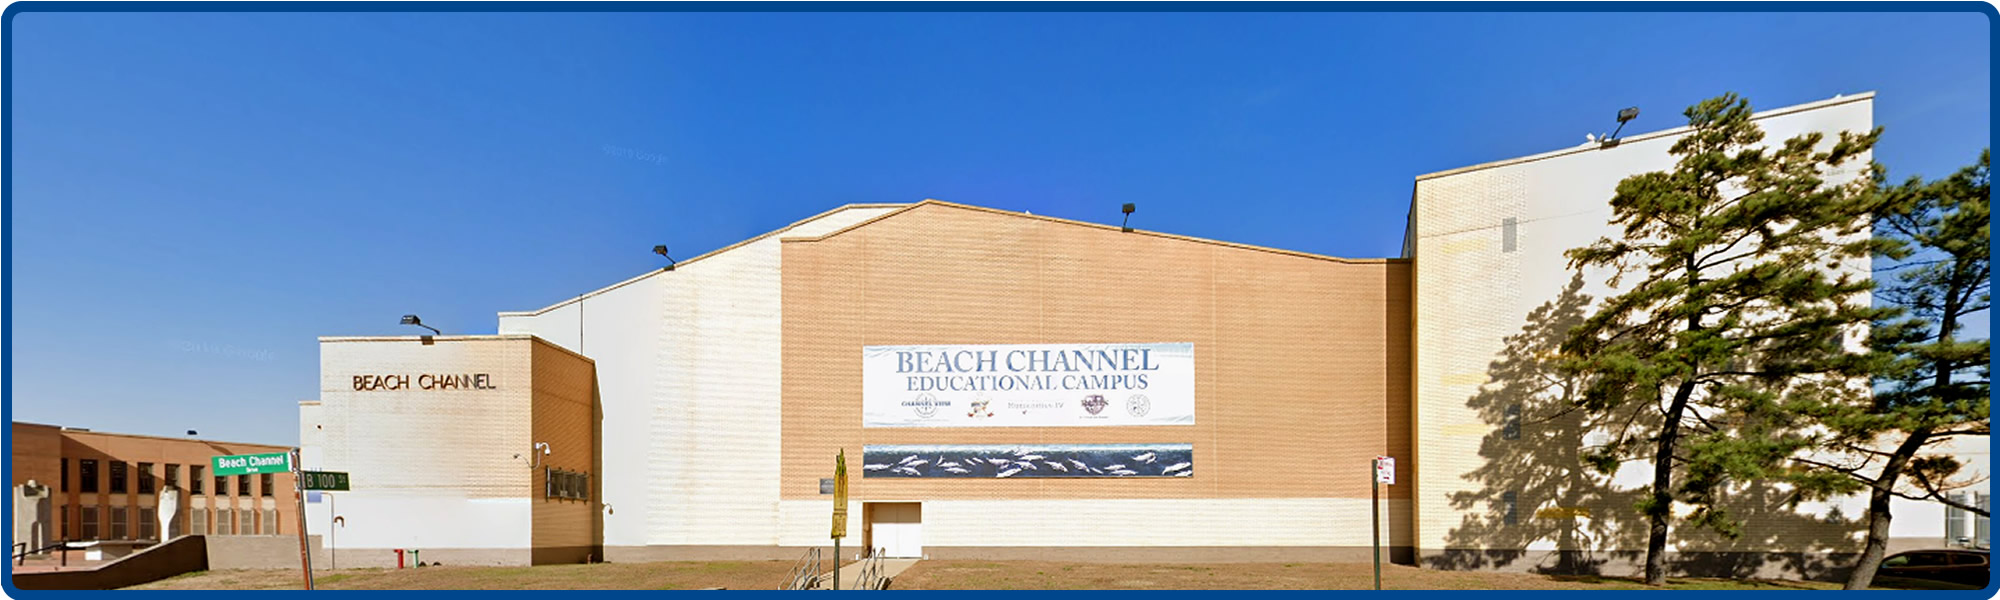 P256Q Beach Channel Educational Campus